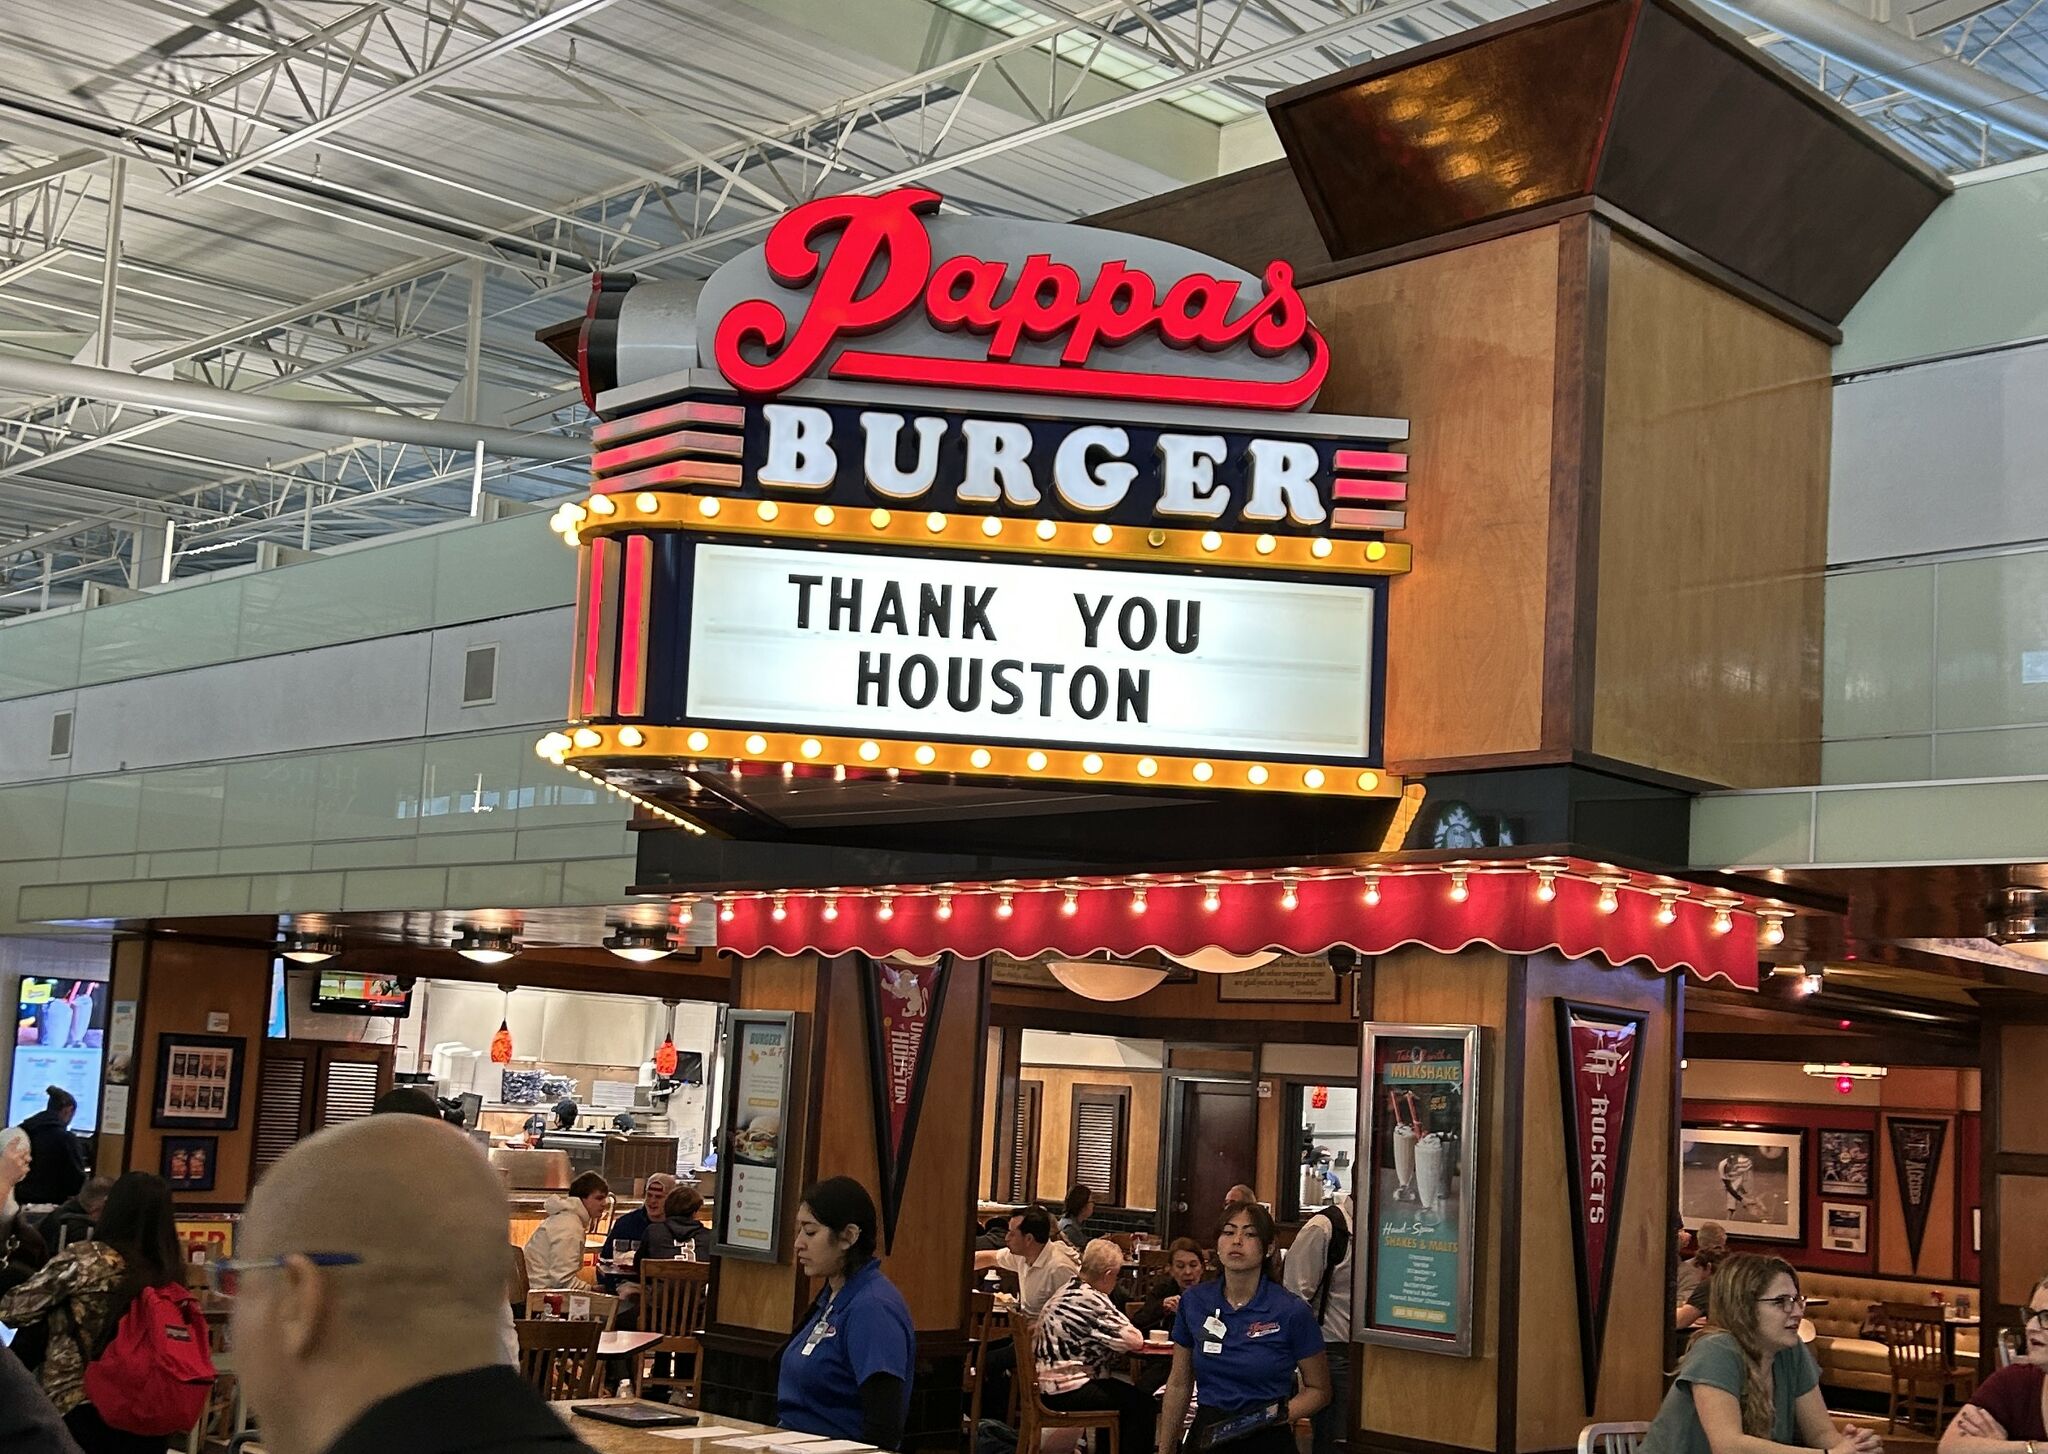 Pappas Burger Building - Picture of Pappas Burger, Houston